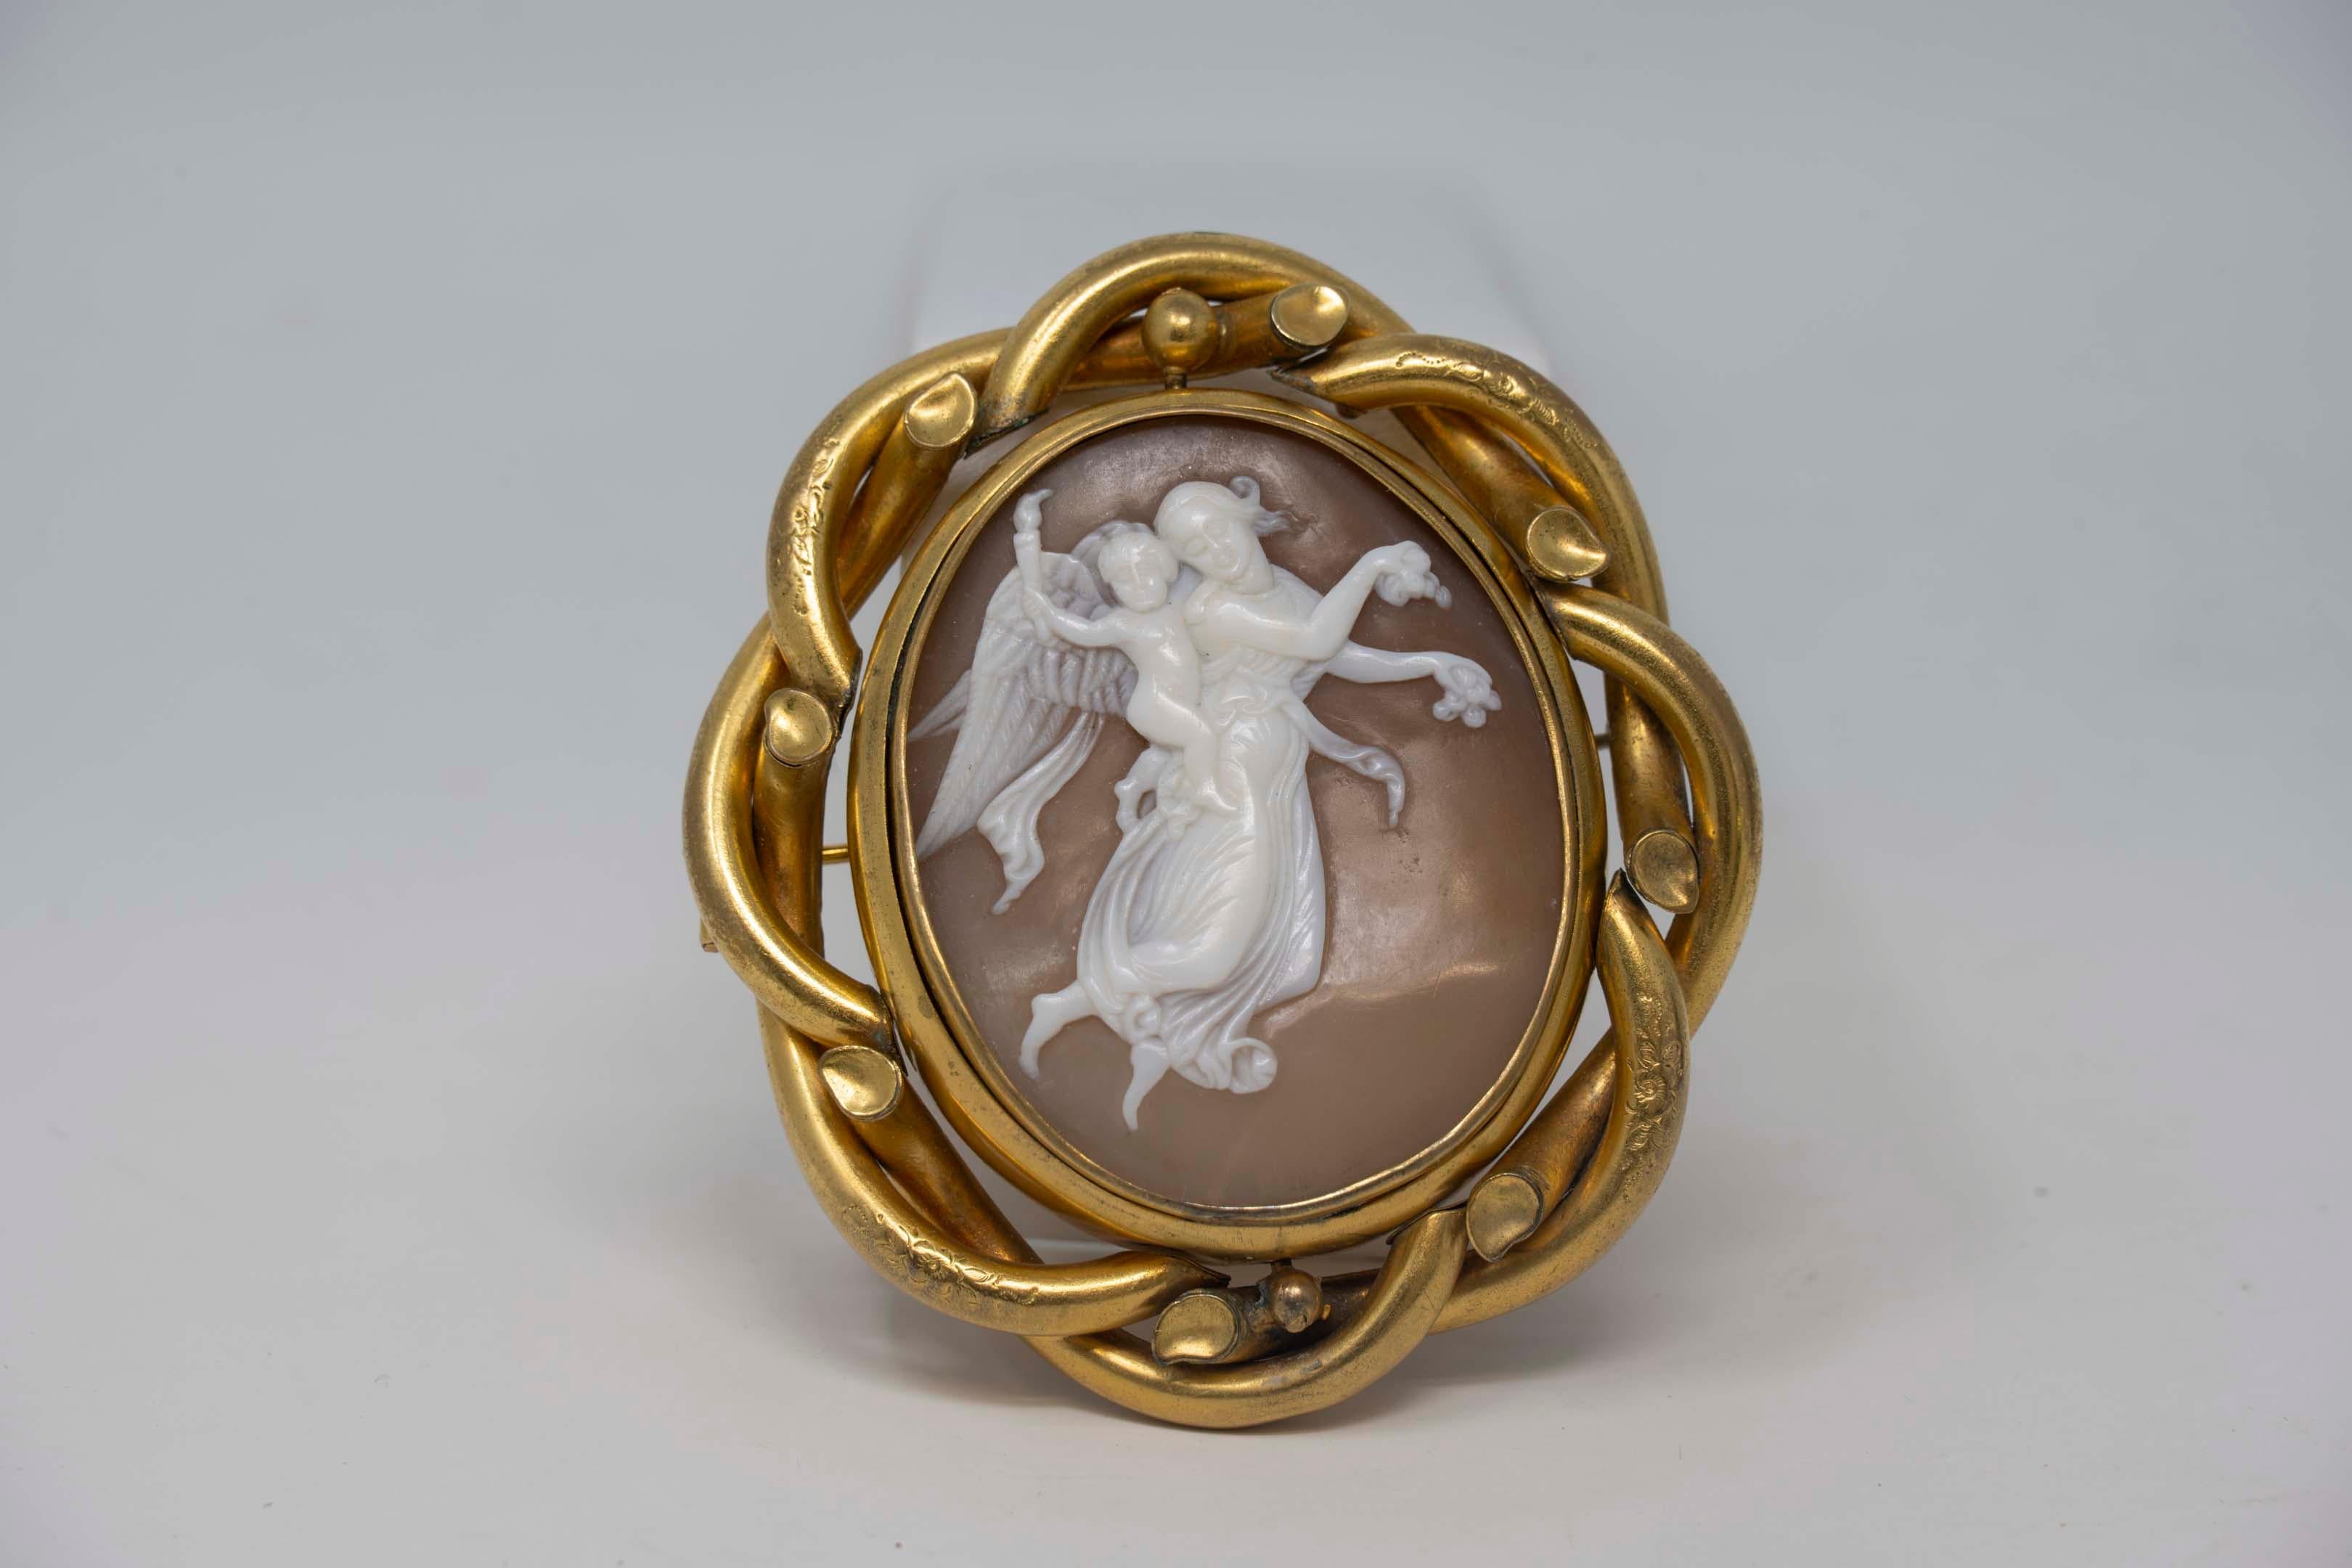 Broche pendentif victorienne en plaqué or représentant Vénus et Cupidon en deuil. Le tour central, comme le montre la photo au dos, est scellé avec du cristal, aucune marque trouvée, vers 1880. En bon état, la broche mesure 7,2 cm x 6,5 cm. Le camée